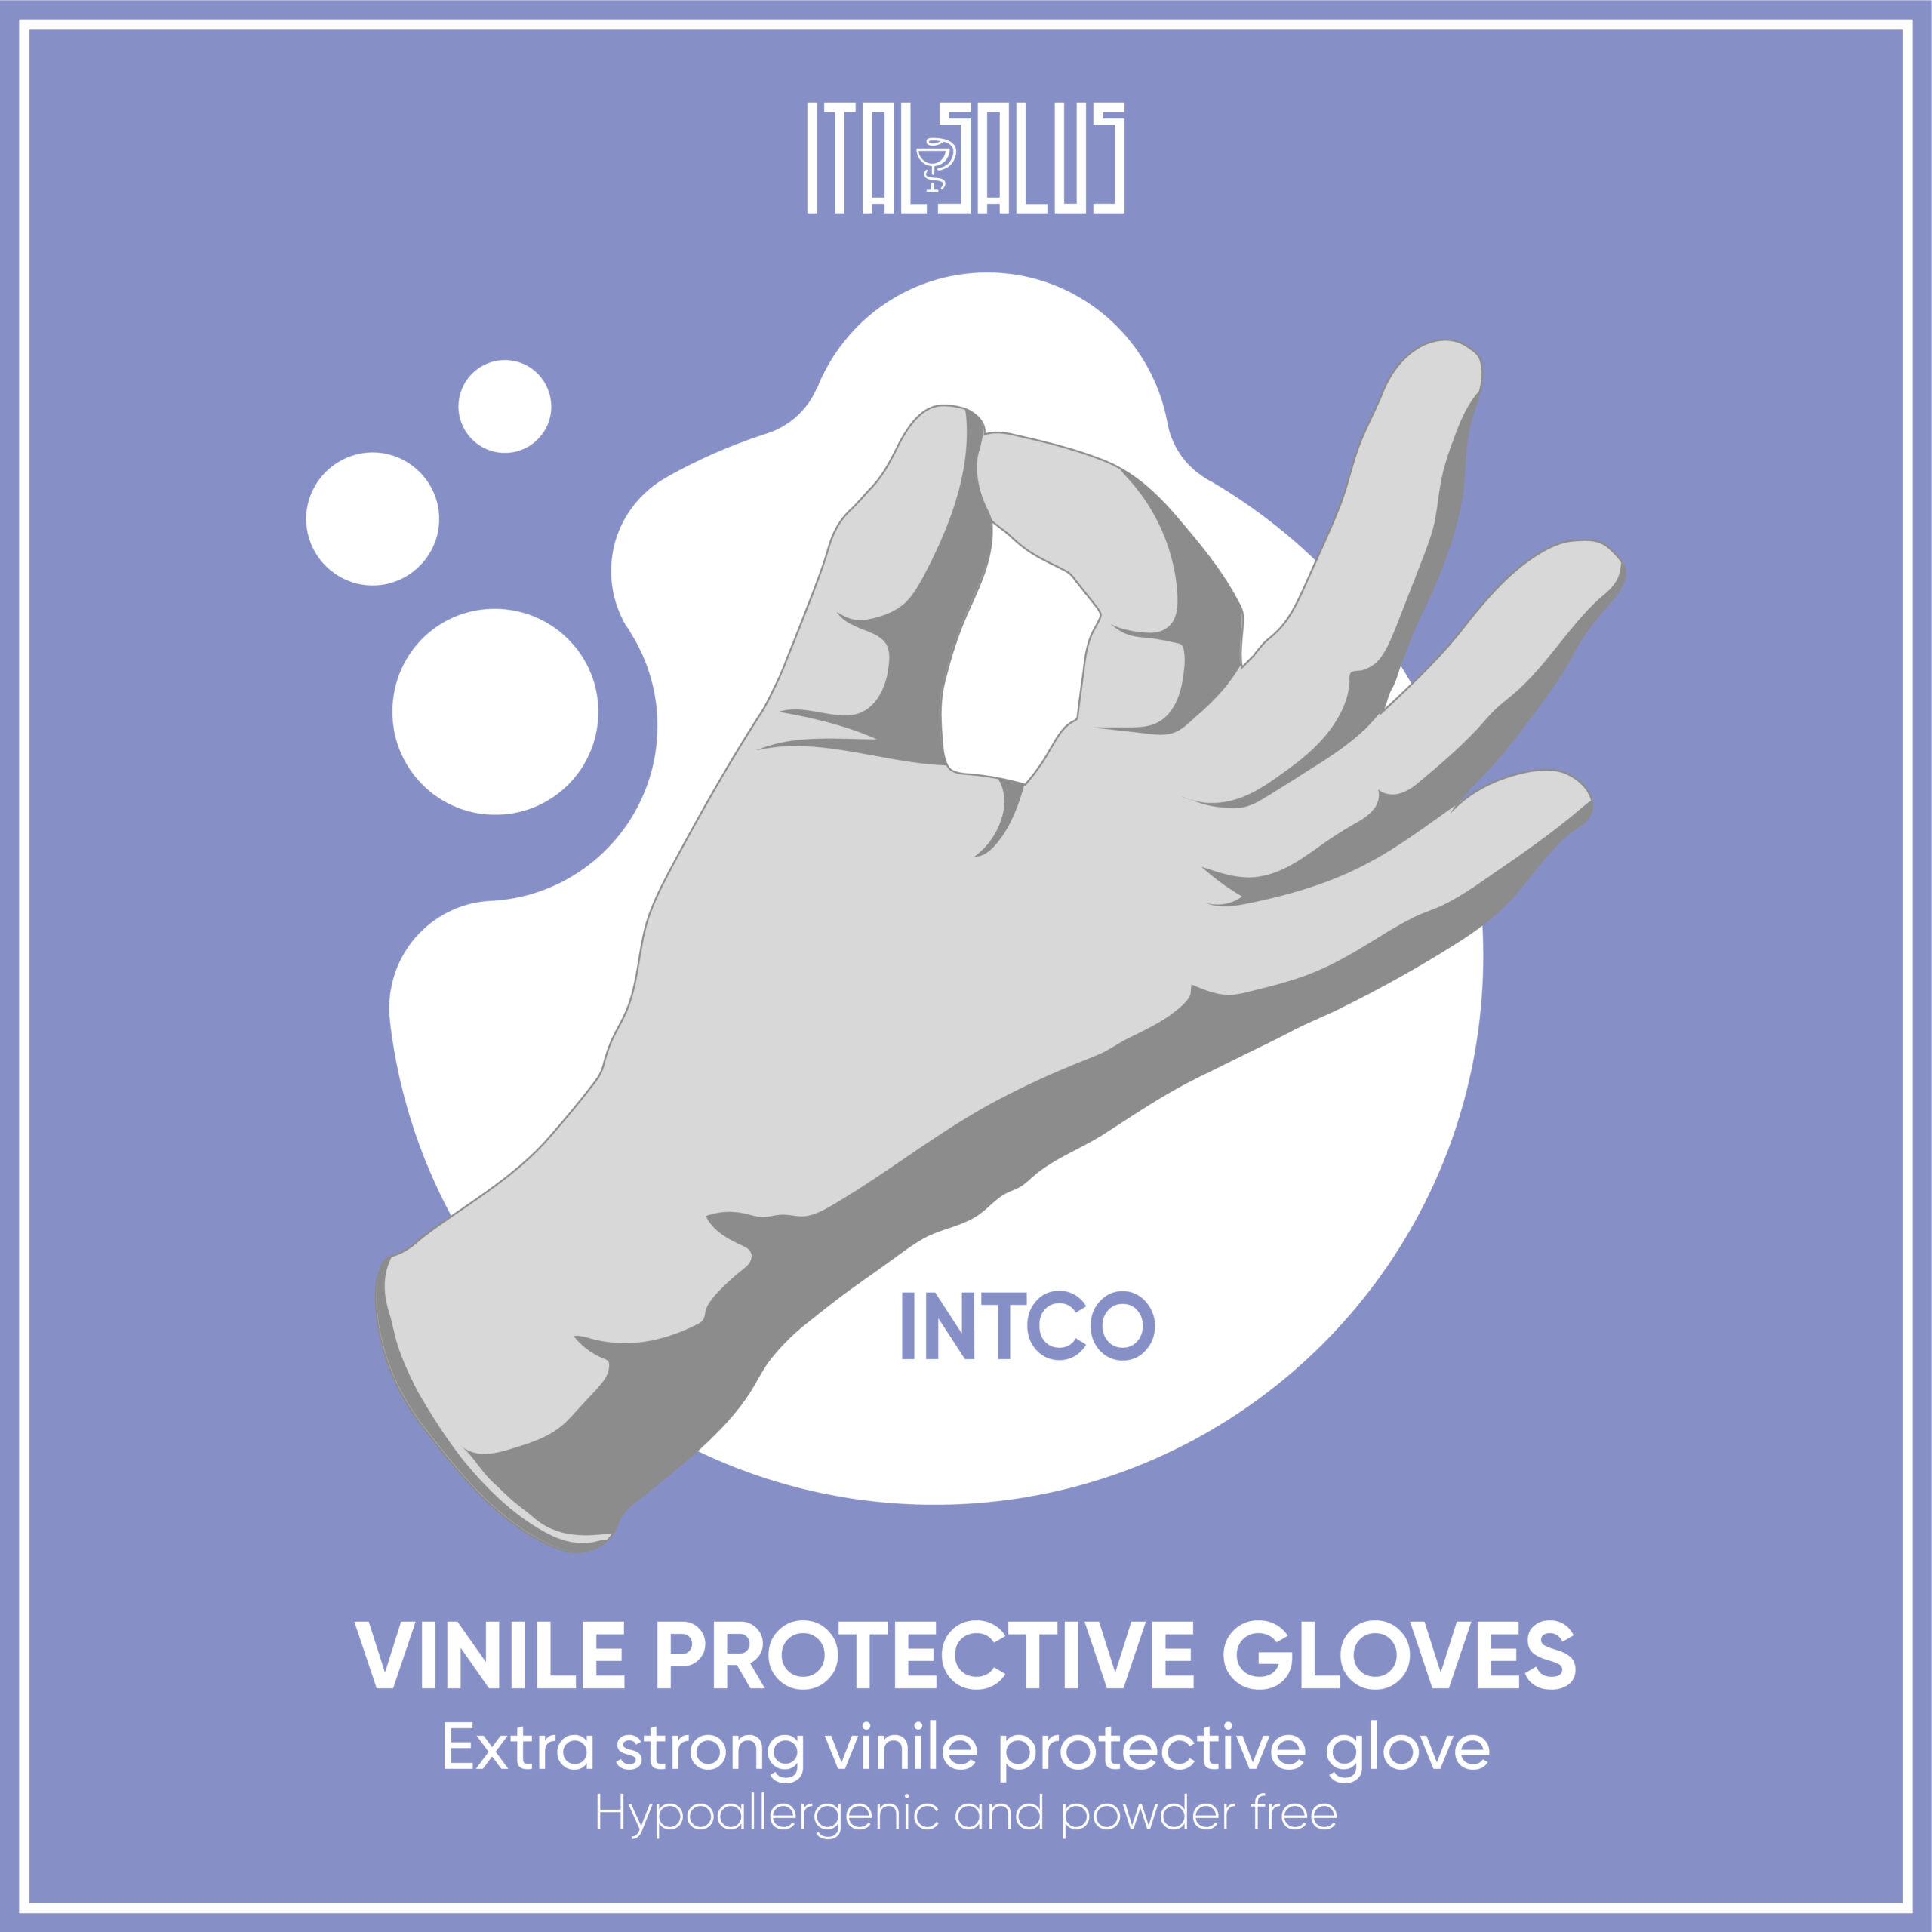 vinile protective gloves intco draw